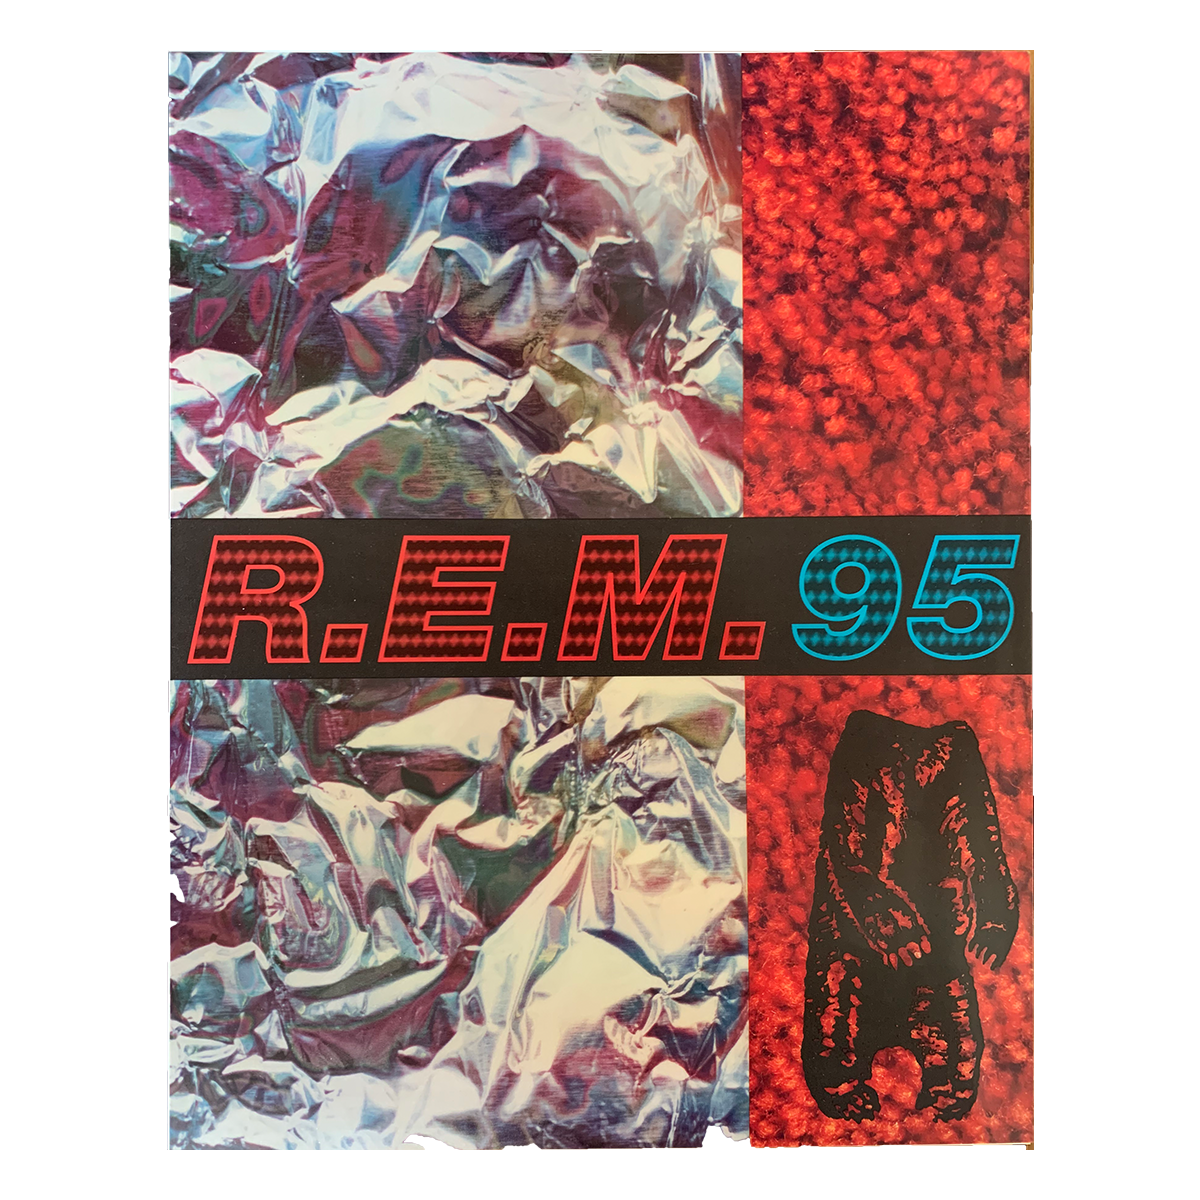 Original Monster Program from the band’s 1995 Tour - R.E.M.